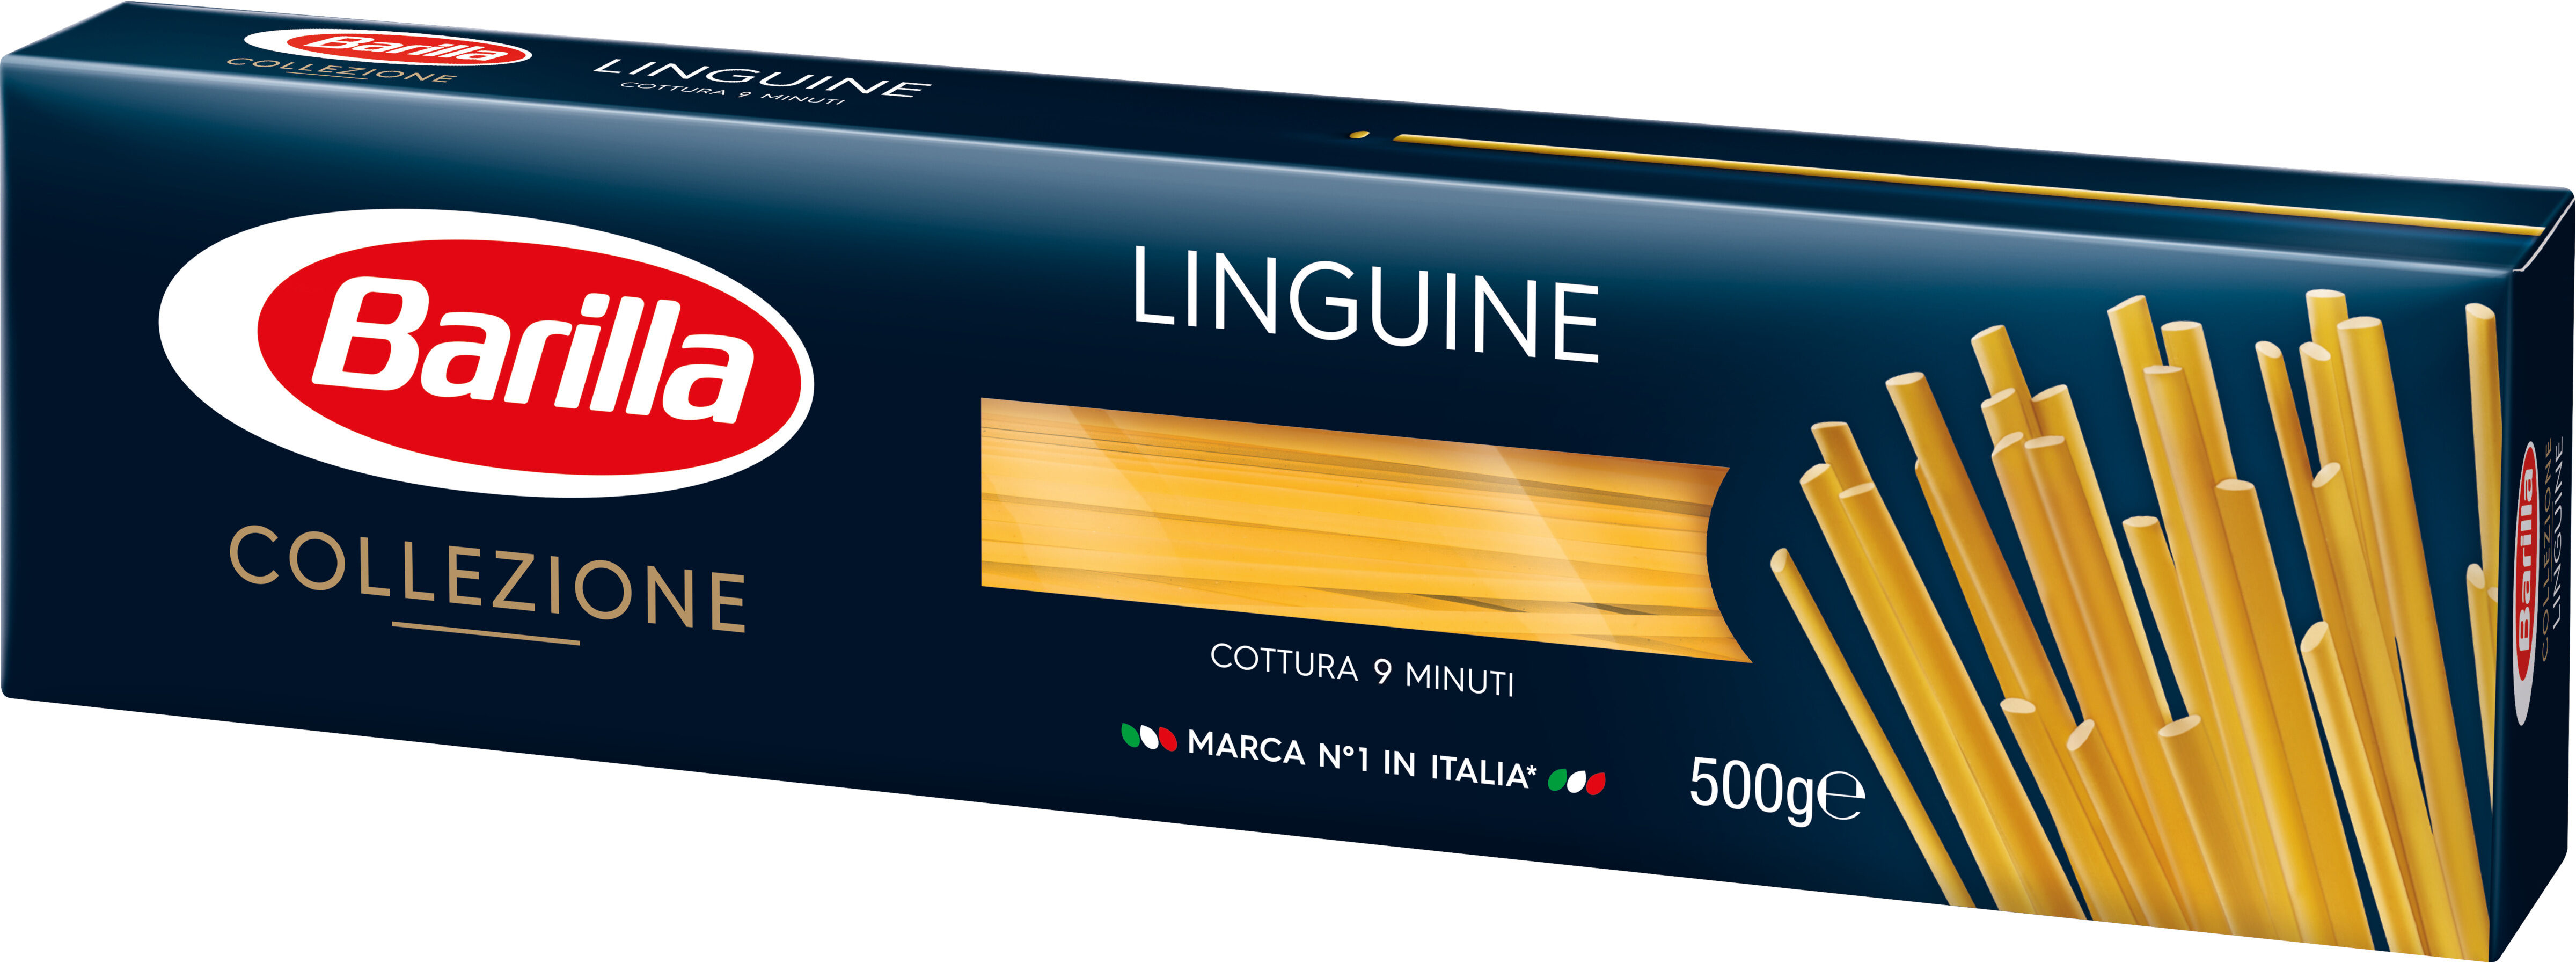 collezione linguine - Produkt - fr